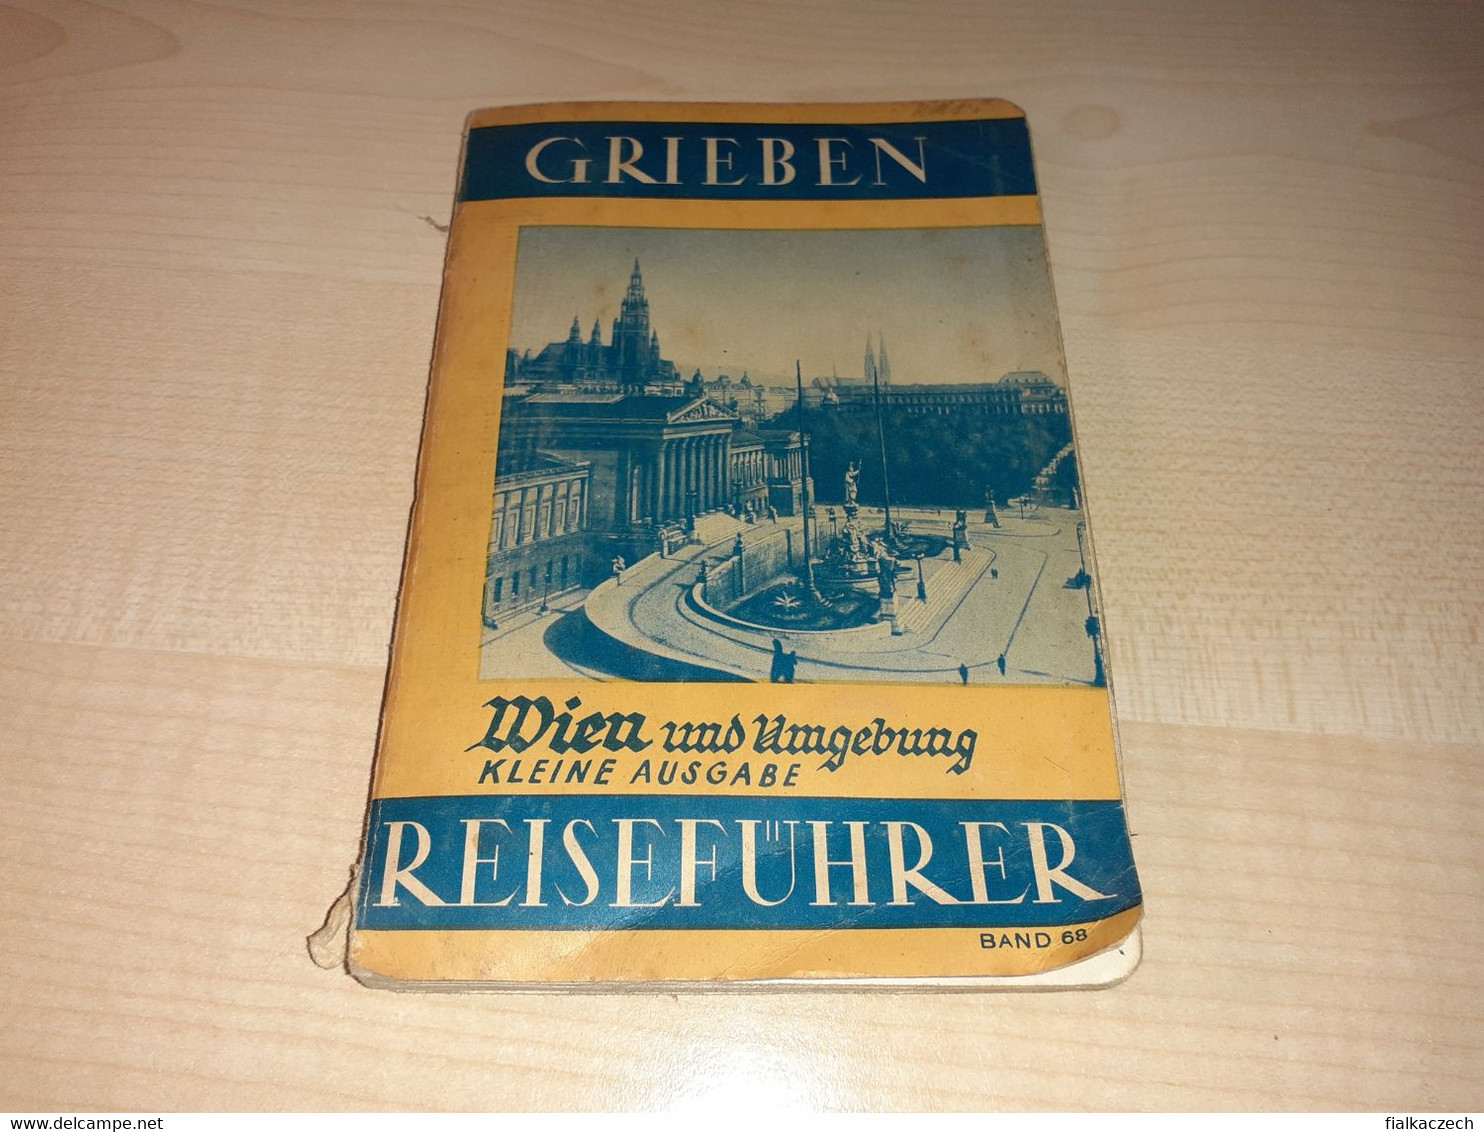 Grieben 1937, Wien Und Umgebung Kleine Ausgabe Reiseführer, Austria Tourist Guide, Tour Guide With Map, Karte - Oostenrijk